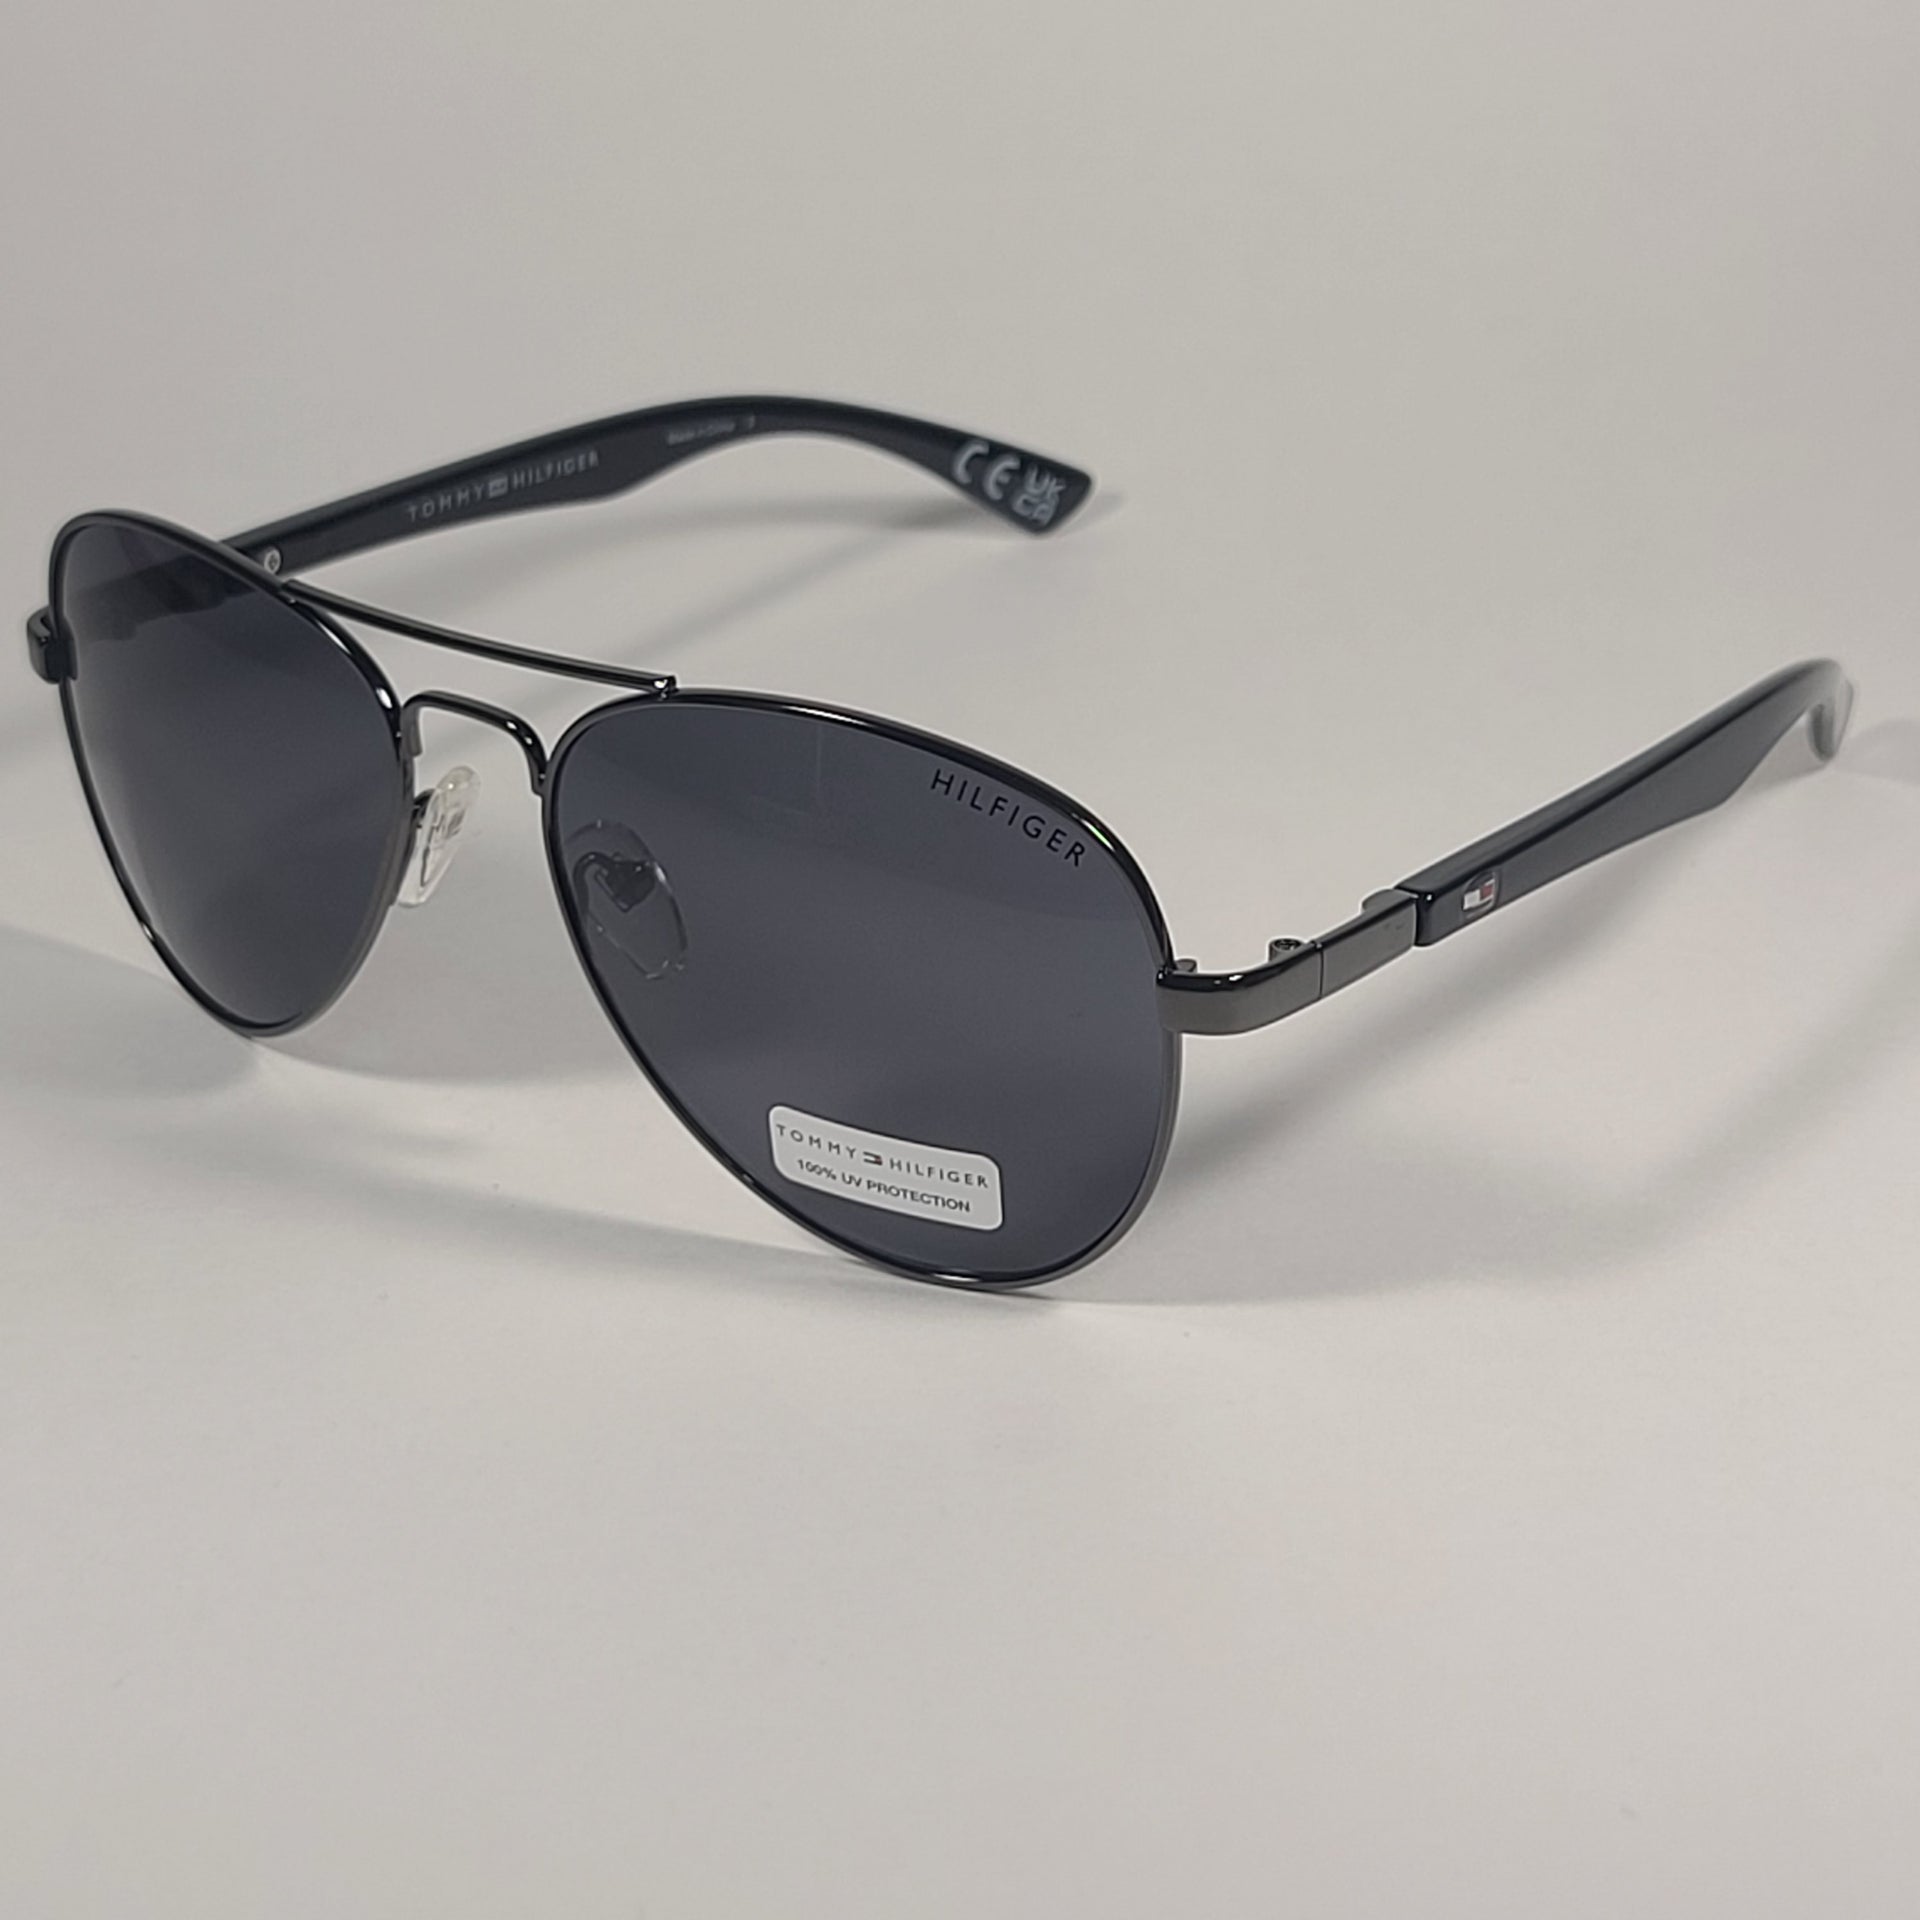 Unbranded Black Aviator Sunglasses for Men for sale